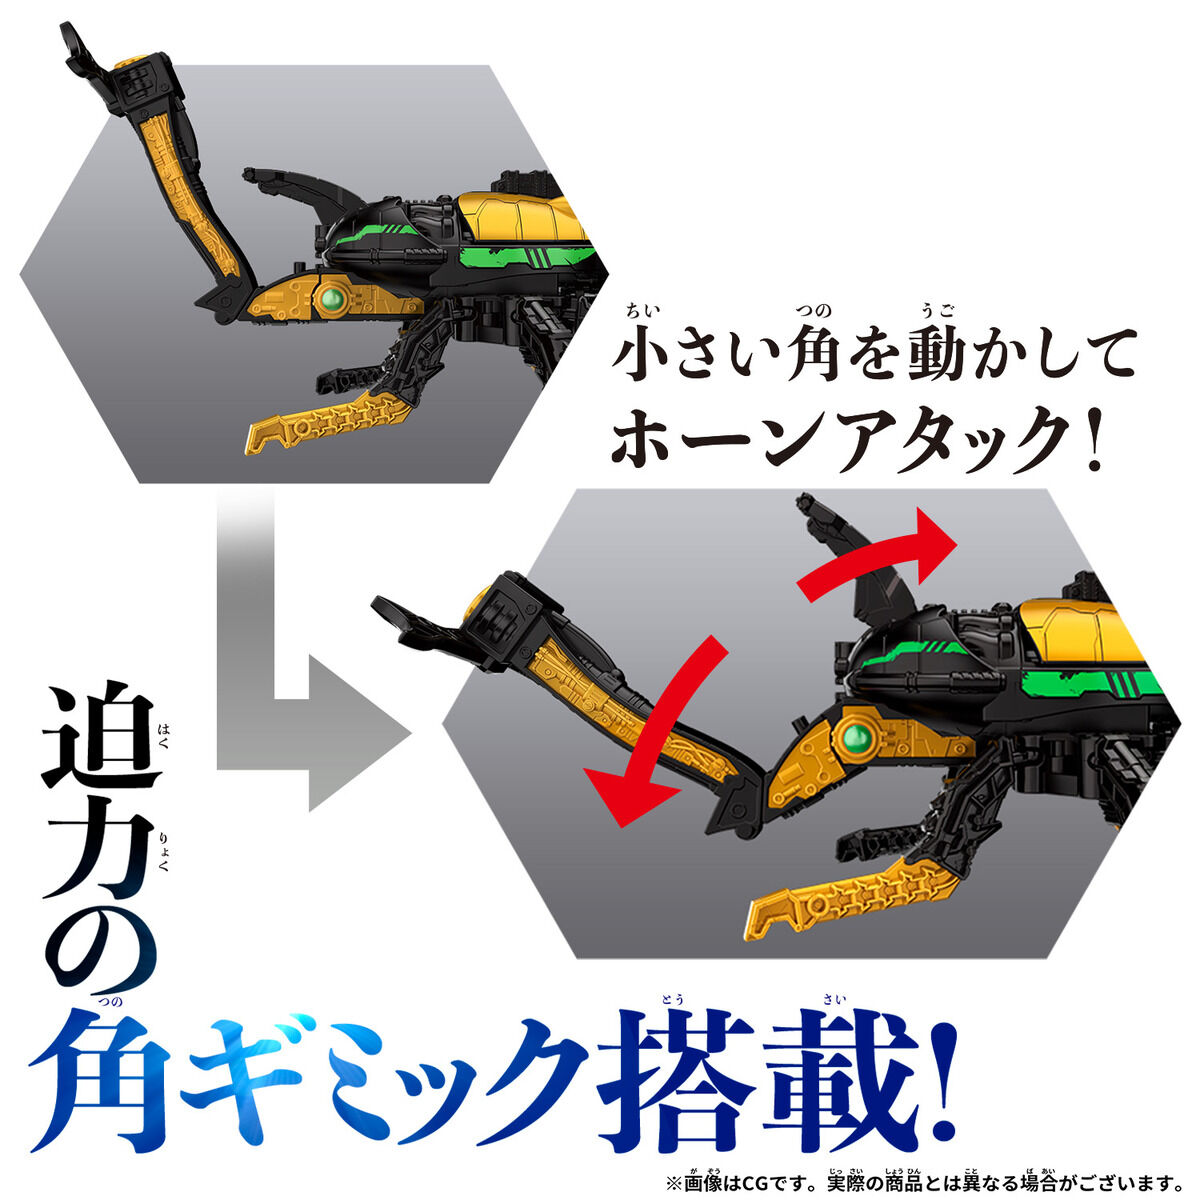 王様戦隊キングオージャー『DXキングオージャー ゴッドカブトセット』変形合体フィギュア-017